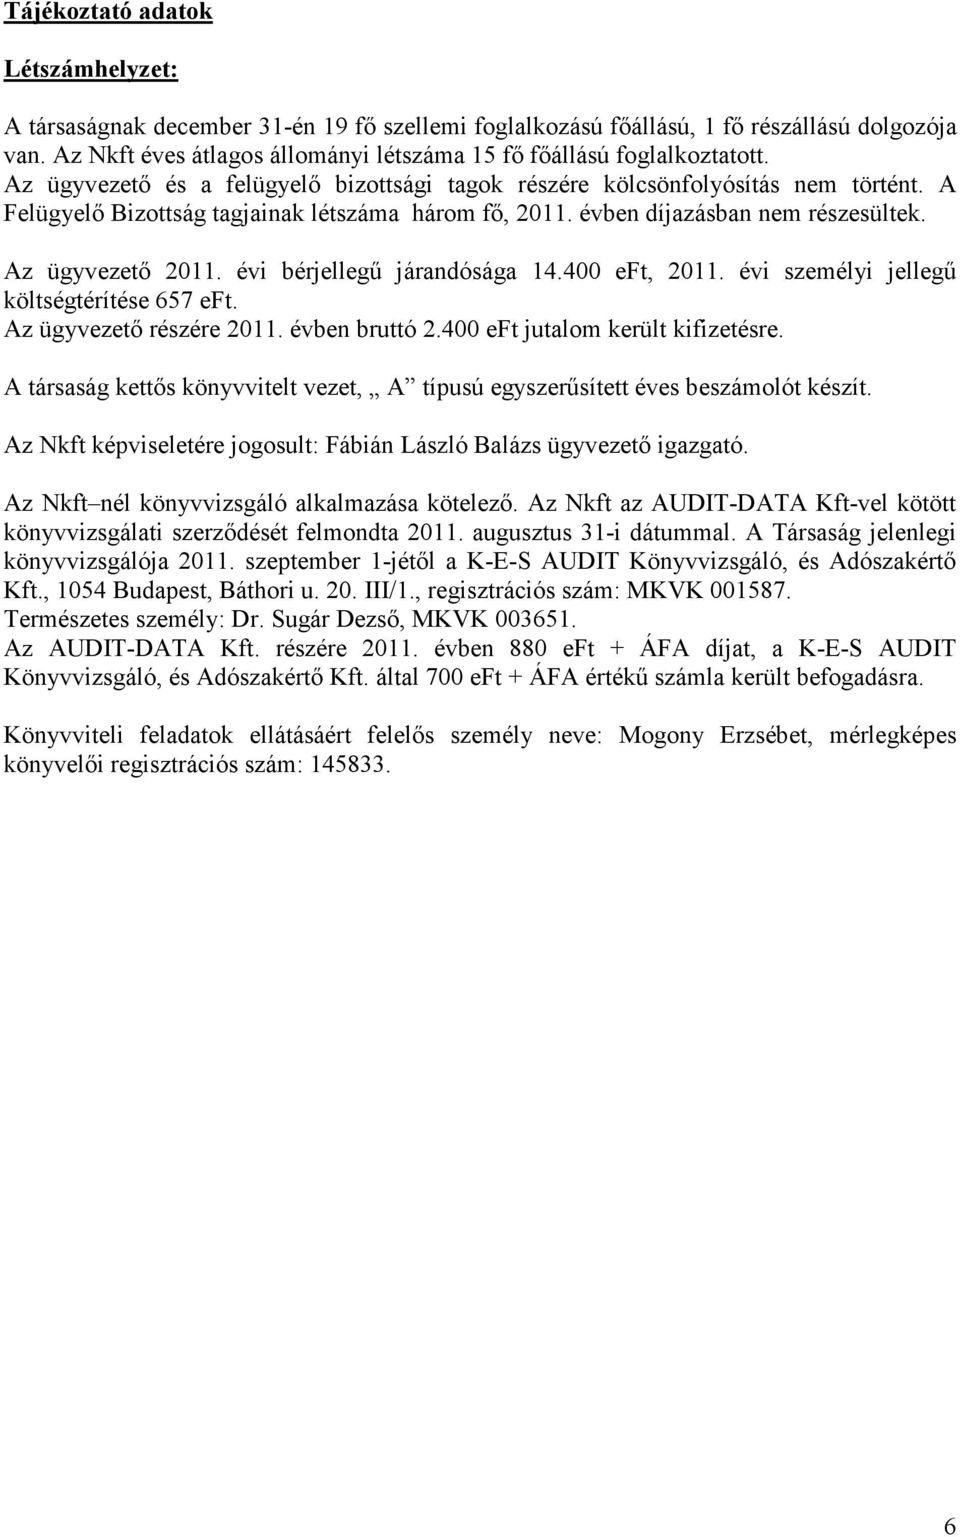 A Felügyelı Bizottság tagjainak létszáma három fı, 2011. évben díjazásban nem részesültek. Az ügyvezetı 2011. évi bérjellegő járandósága 14.400 eft, 2011. évi személyi jellegő költségtérítése 657 eft.